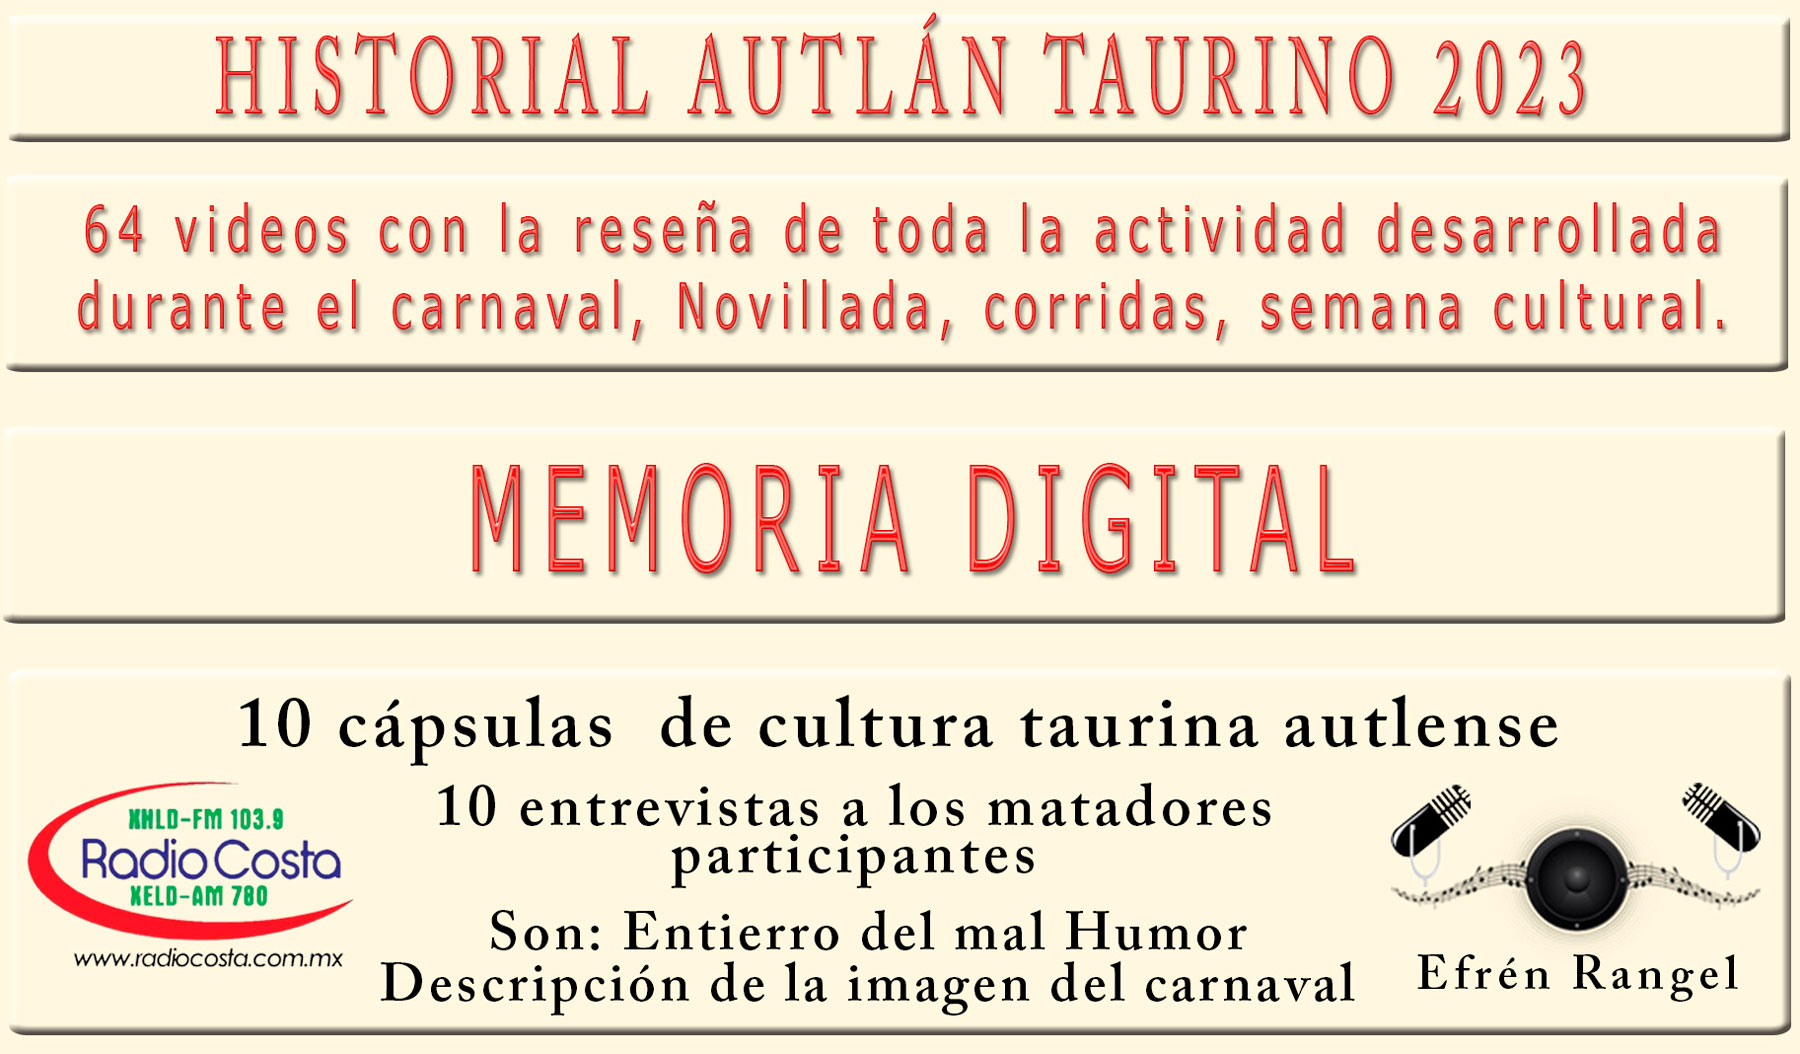 Historia de Autlán Taurino